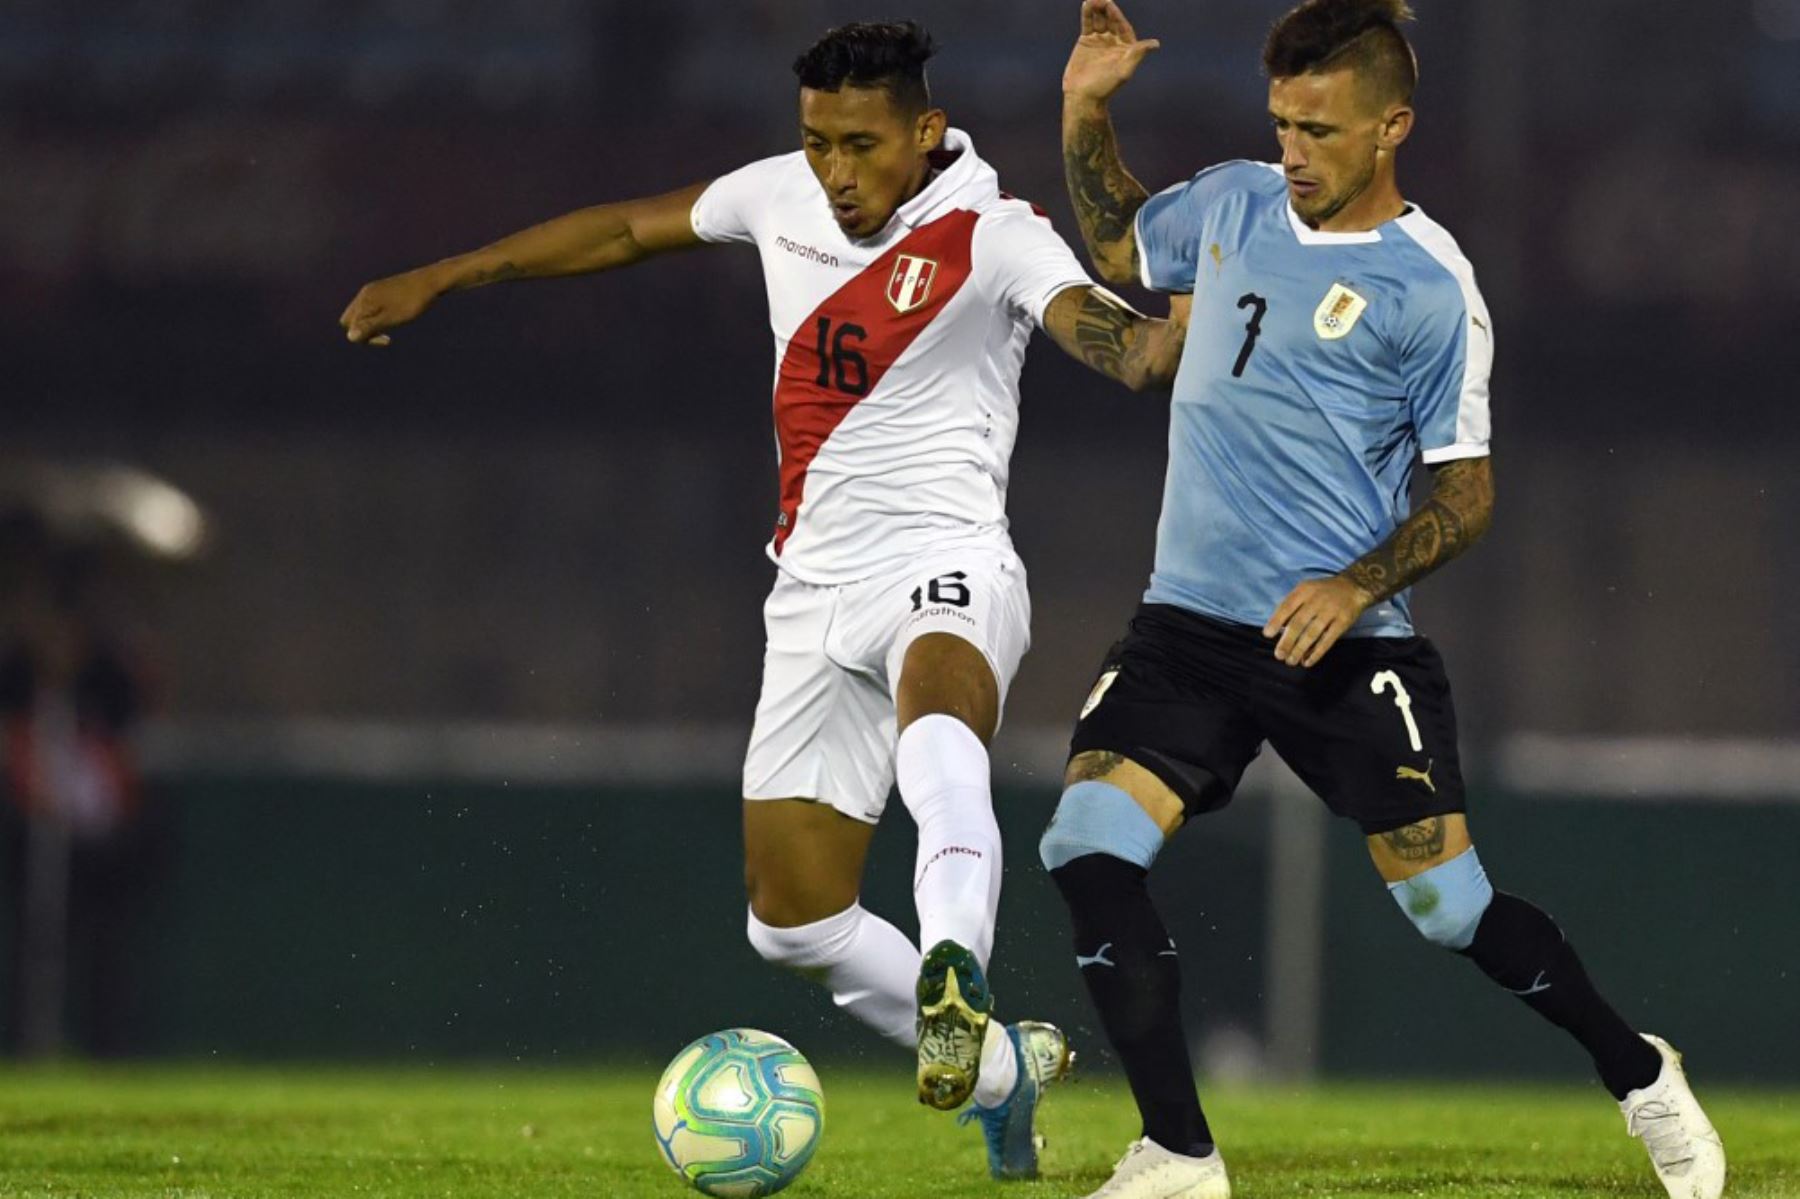 El Christofer Gonzales, futbolista convocado para para el repechaje Catar 2022.
Foto: AFP